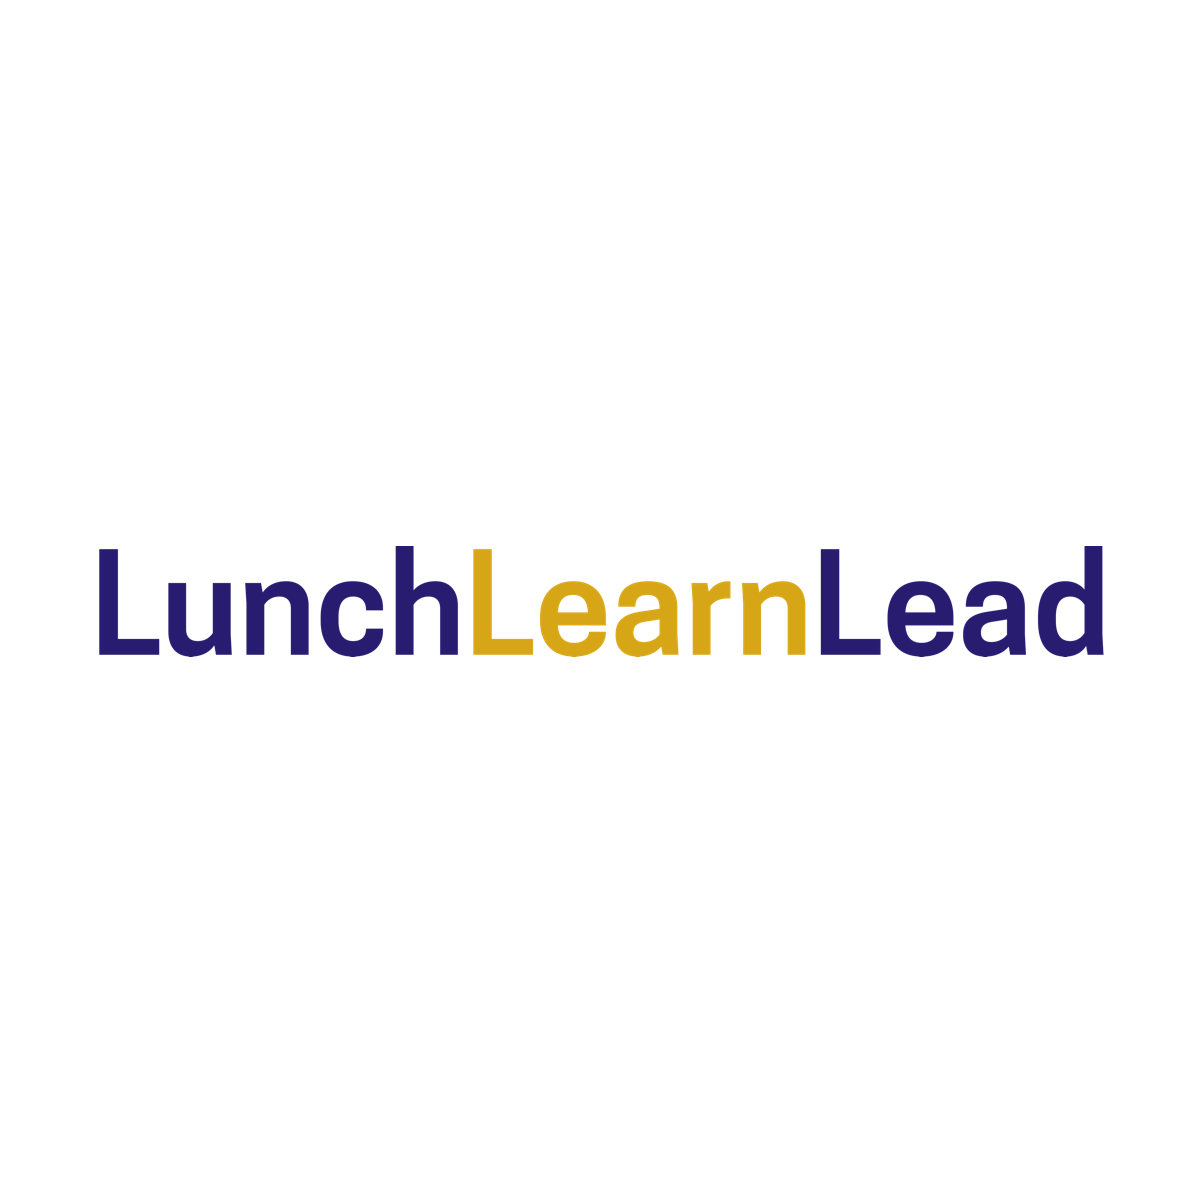 Lunch Learn Lead